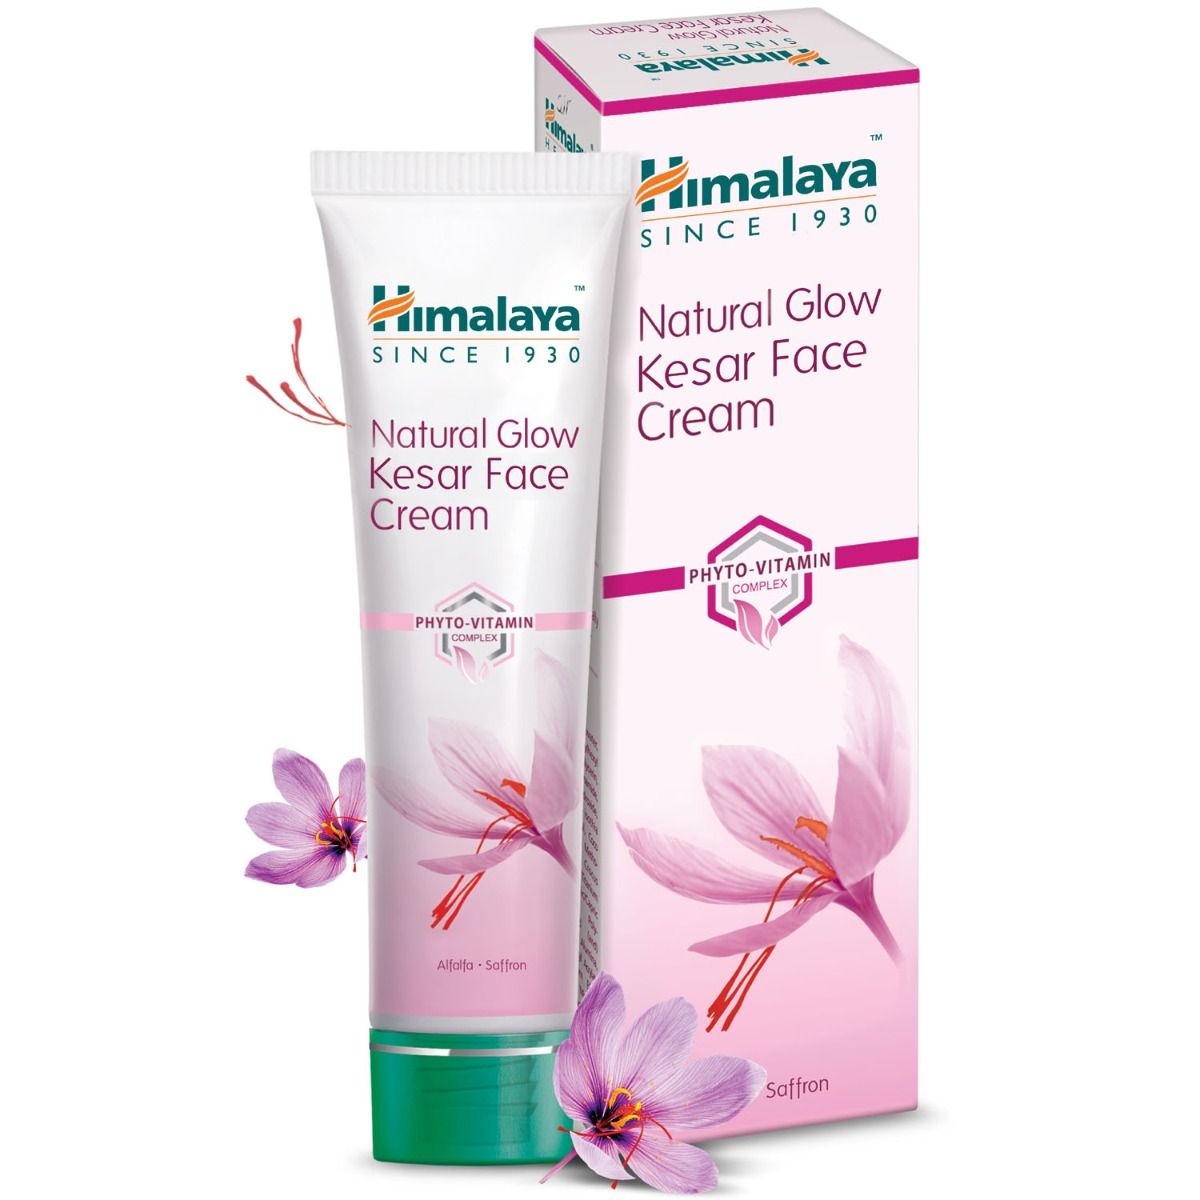 Himalaya Natural Glow Kesar Face Cream, 25 gm, Pack of 1 